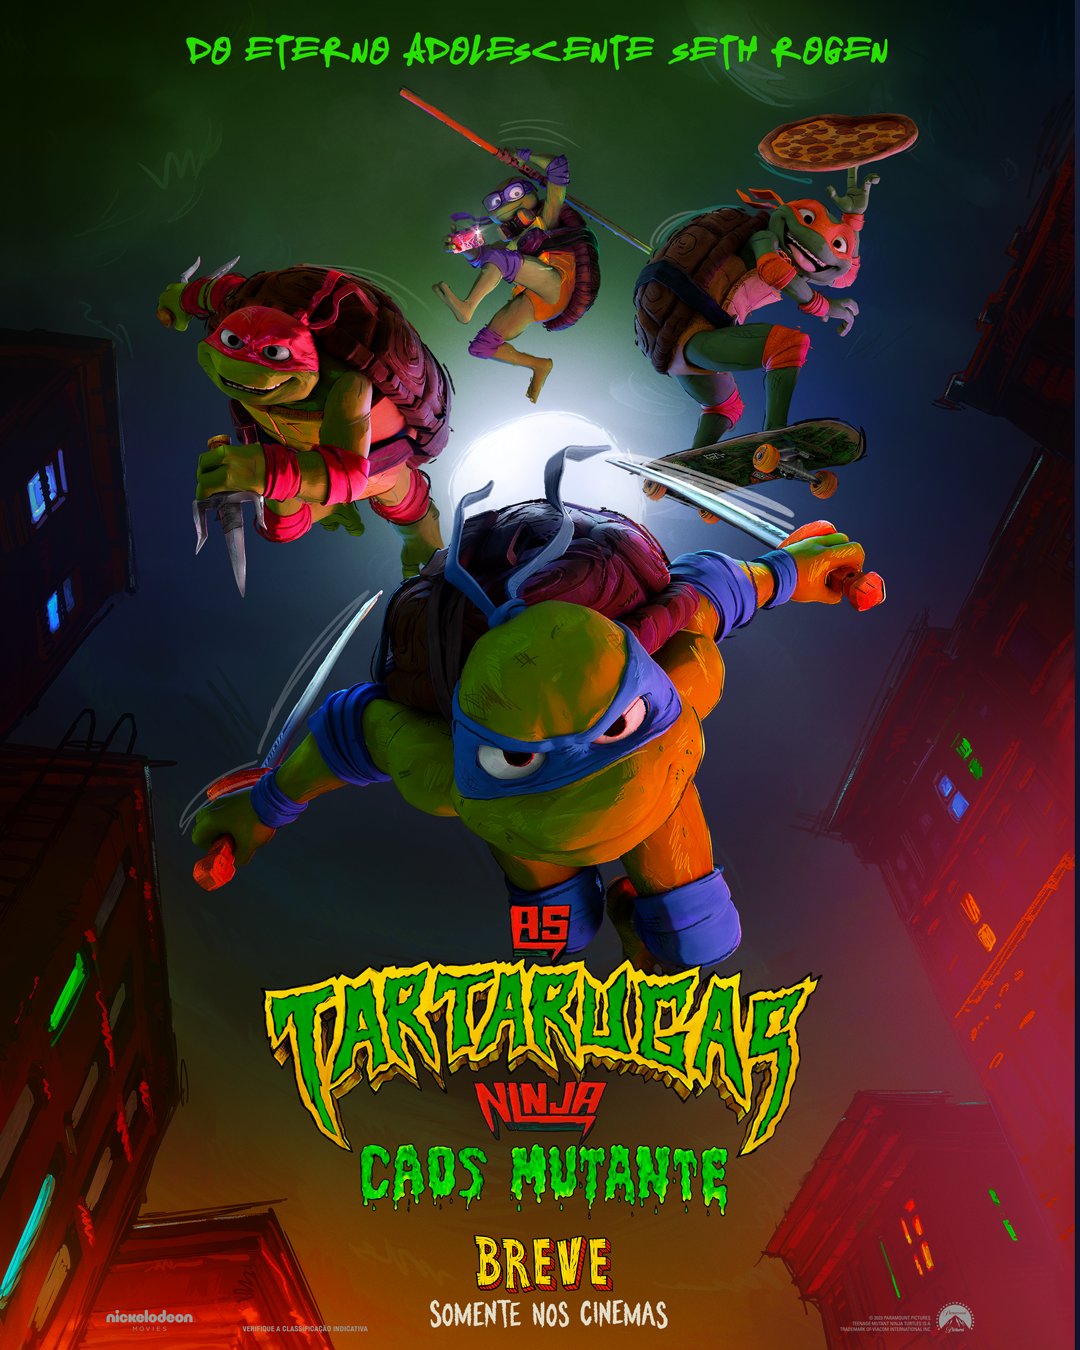 Tartarugas Ninja - Revelado o primeiro trailer do novo desenho animado!